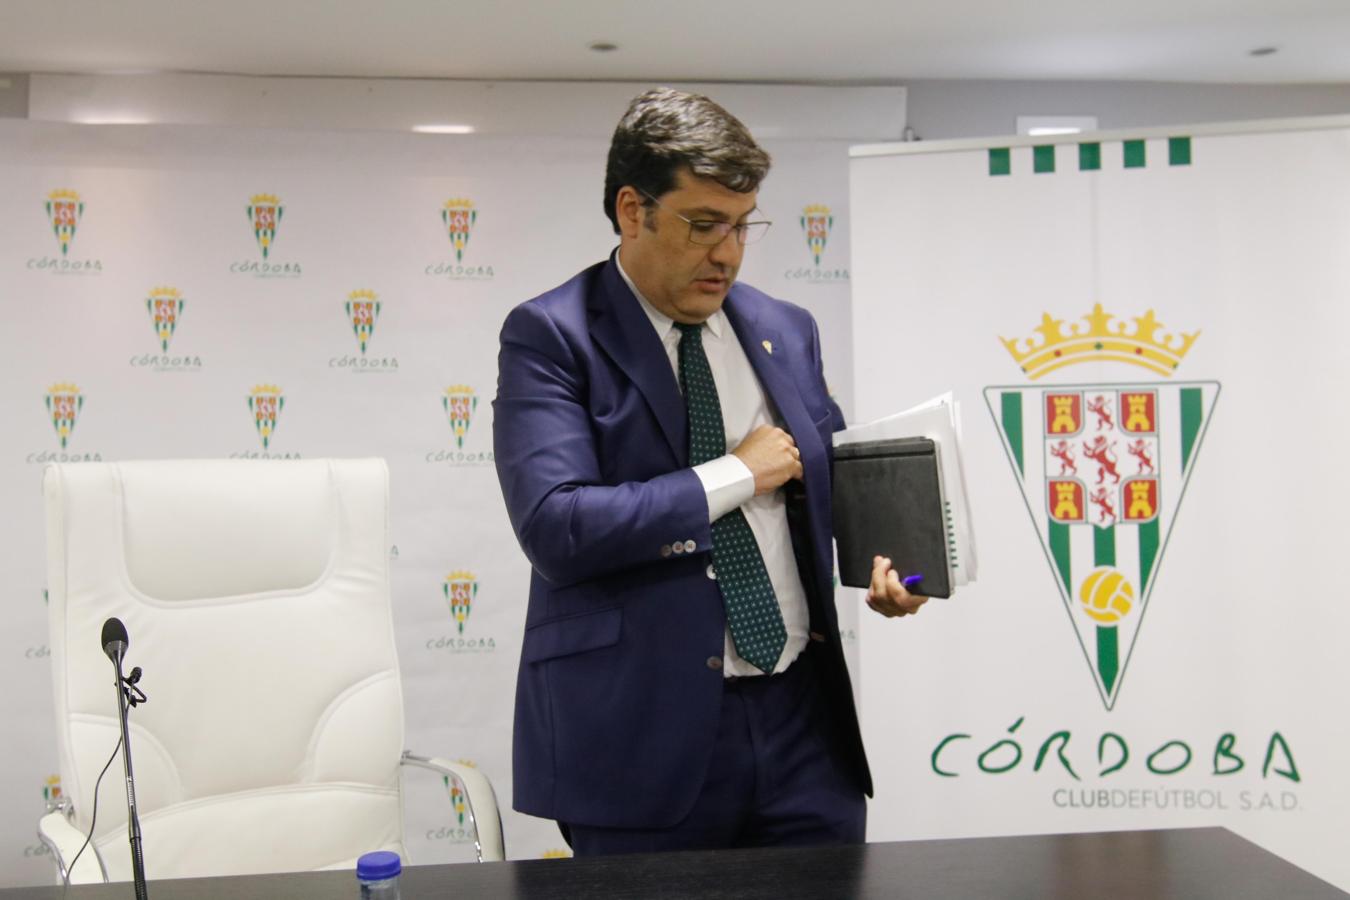 La intervención del presidente del Córdoba CF, en imágenes